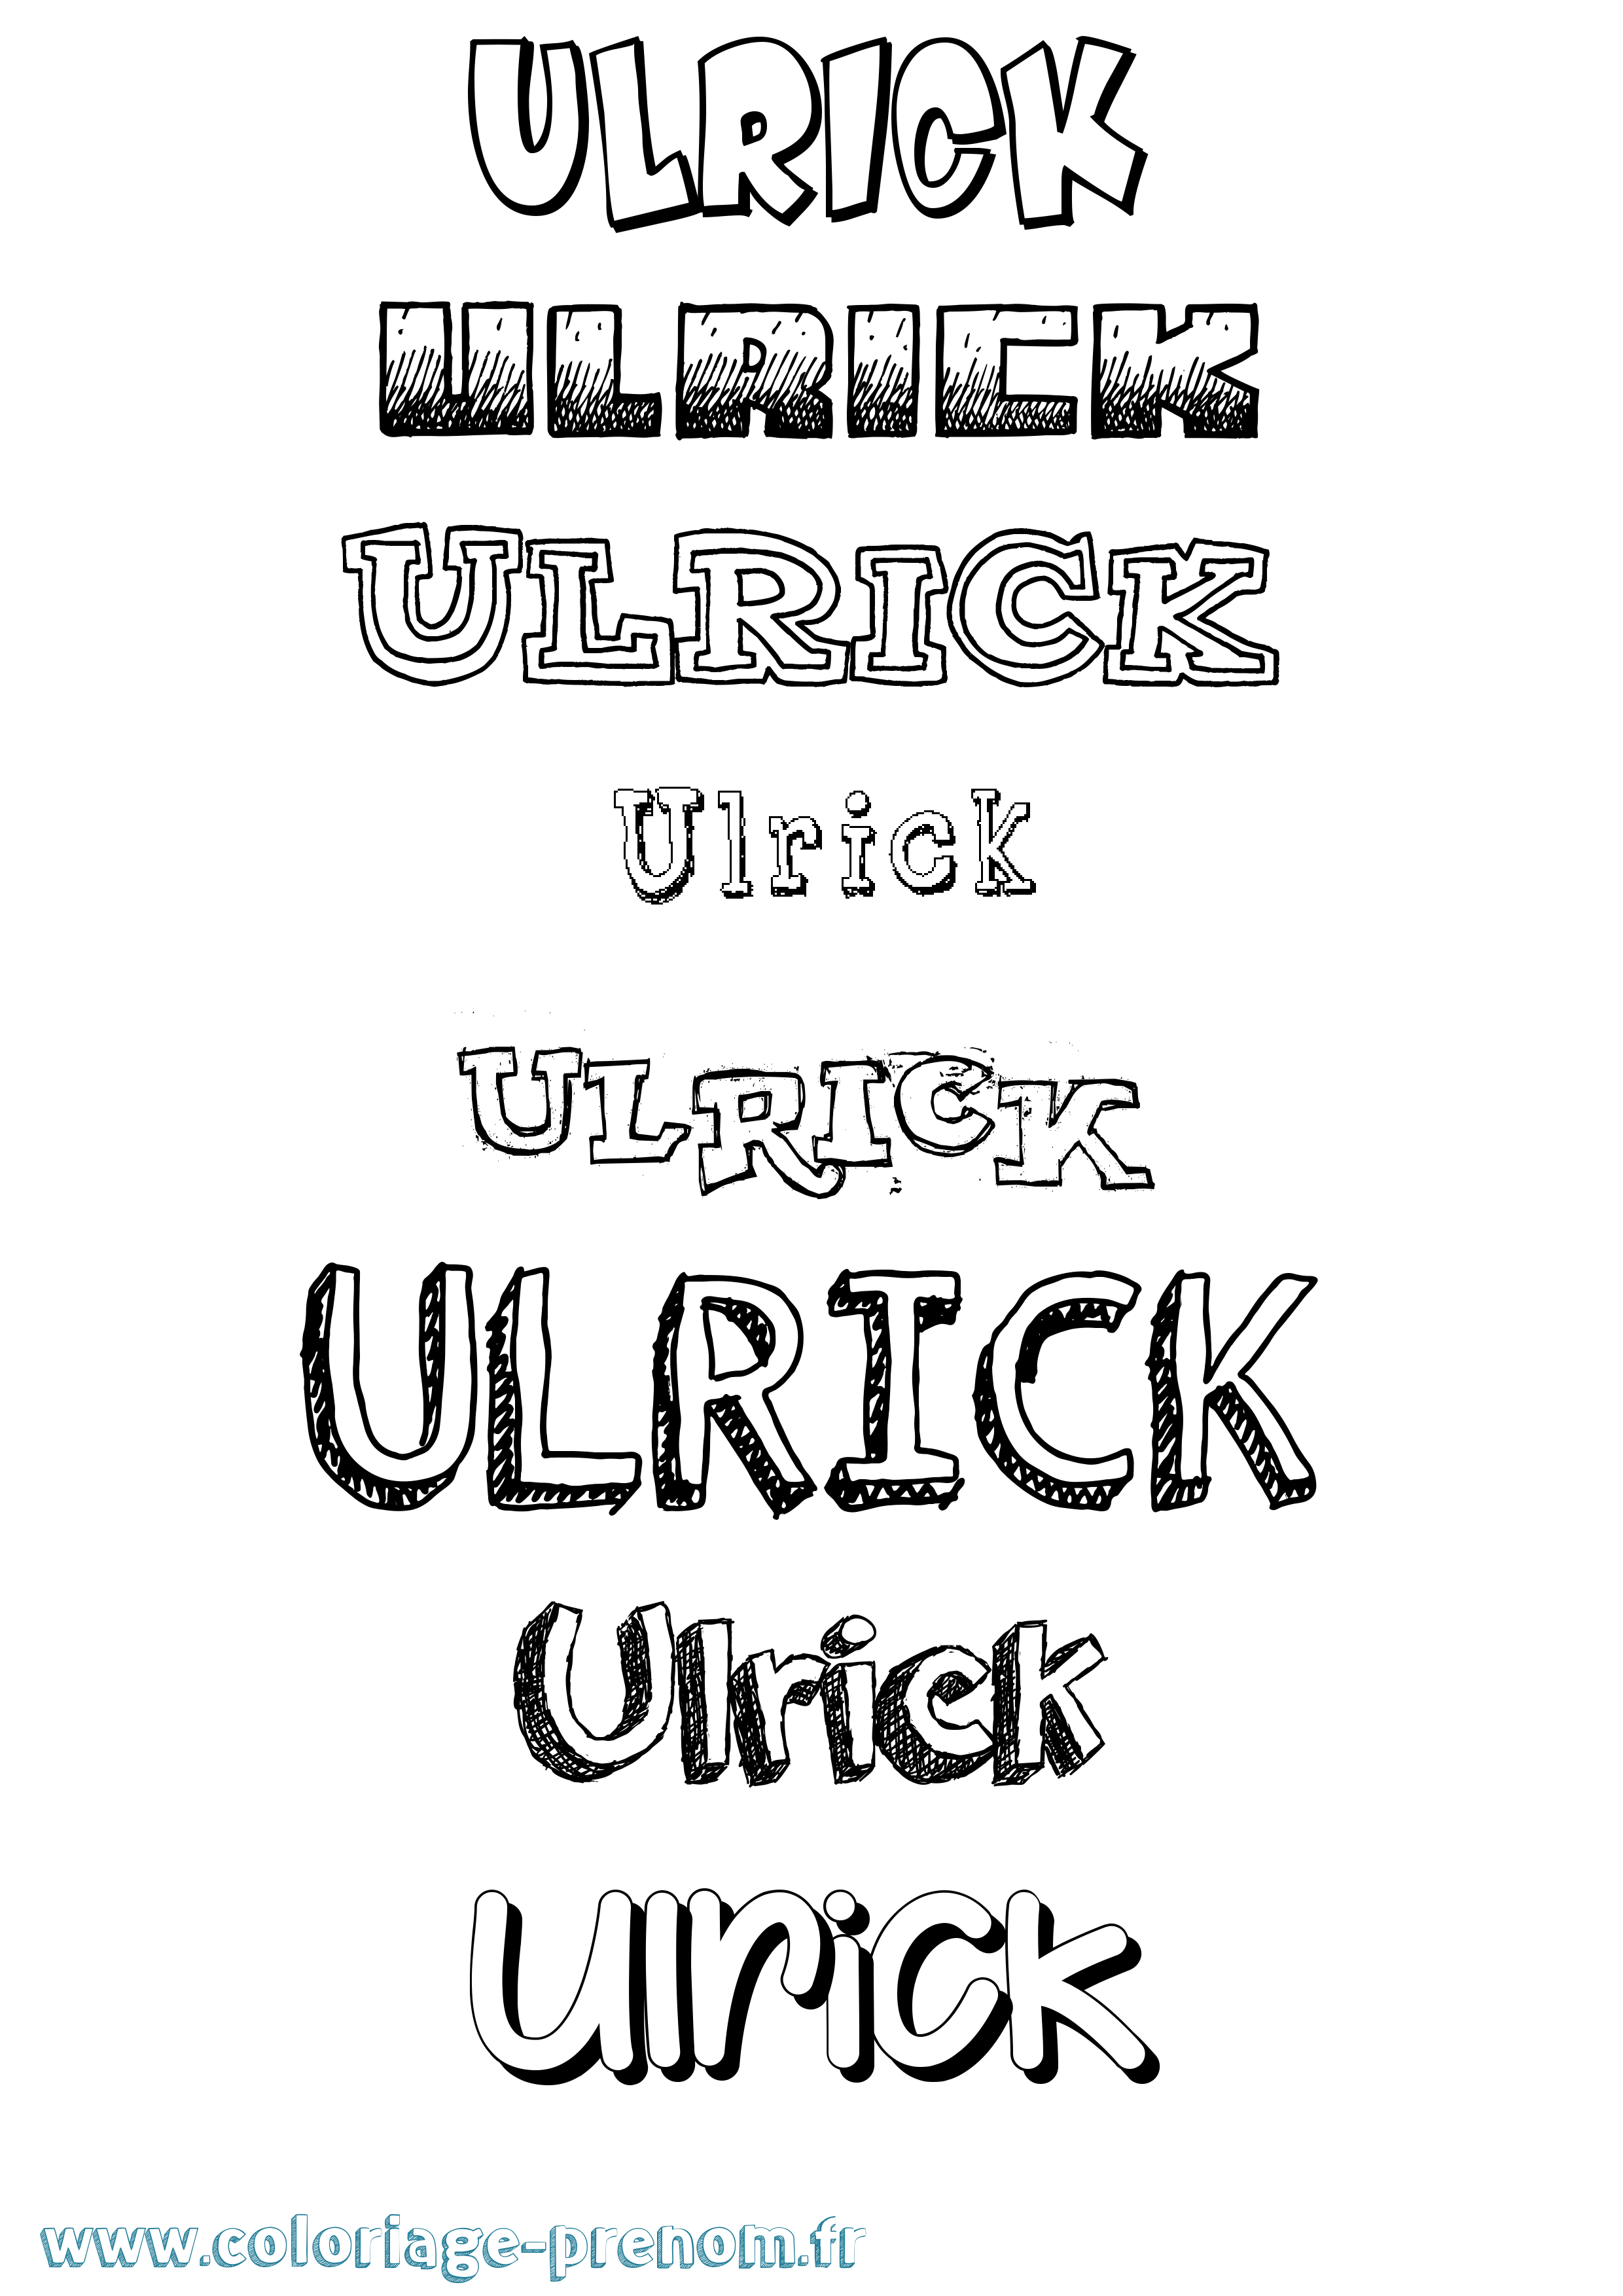 Coloriage prénom Ulrick Dessiné